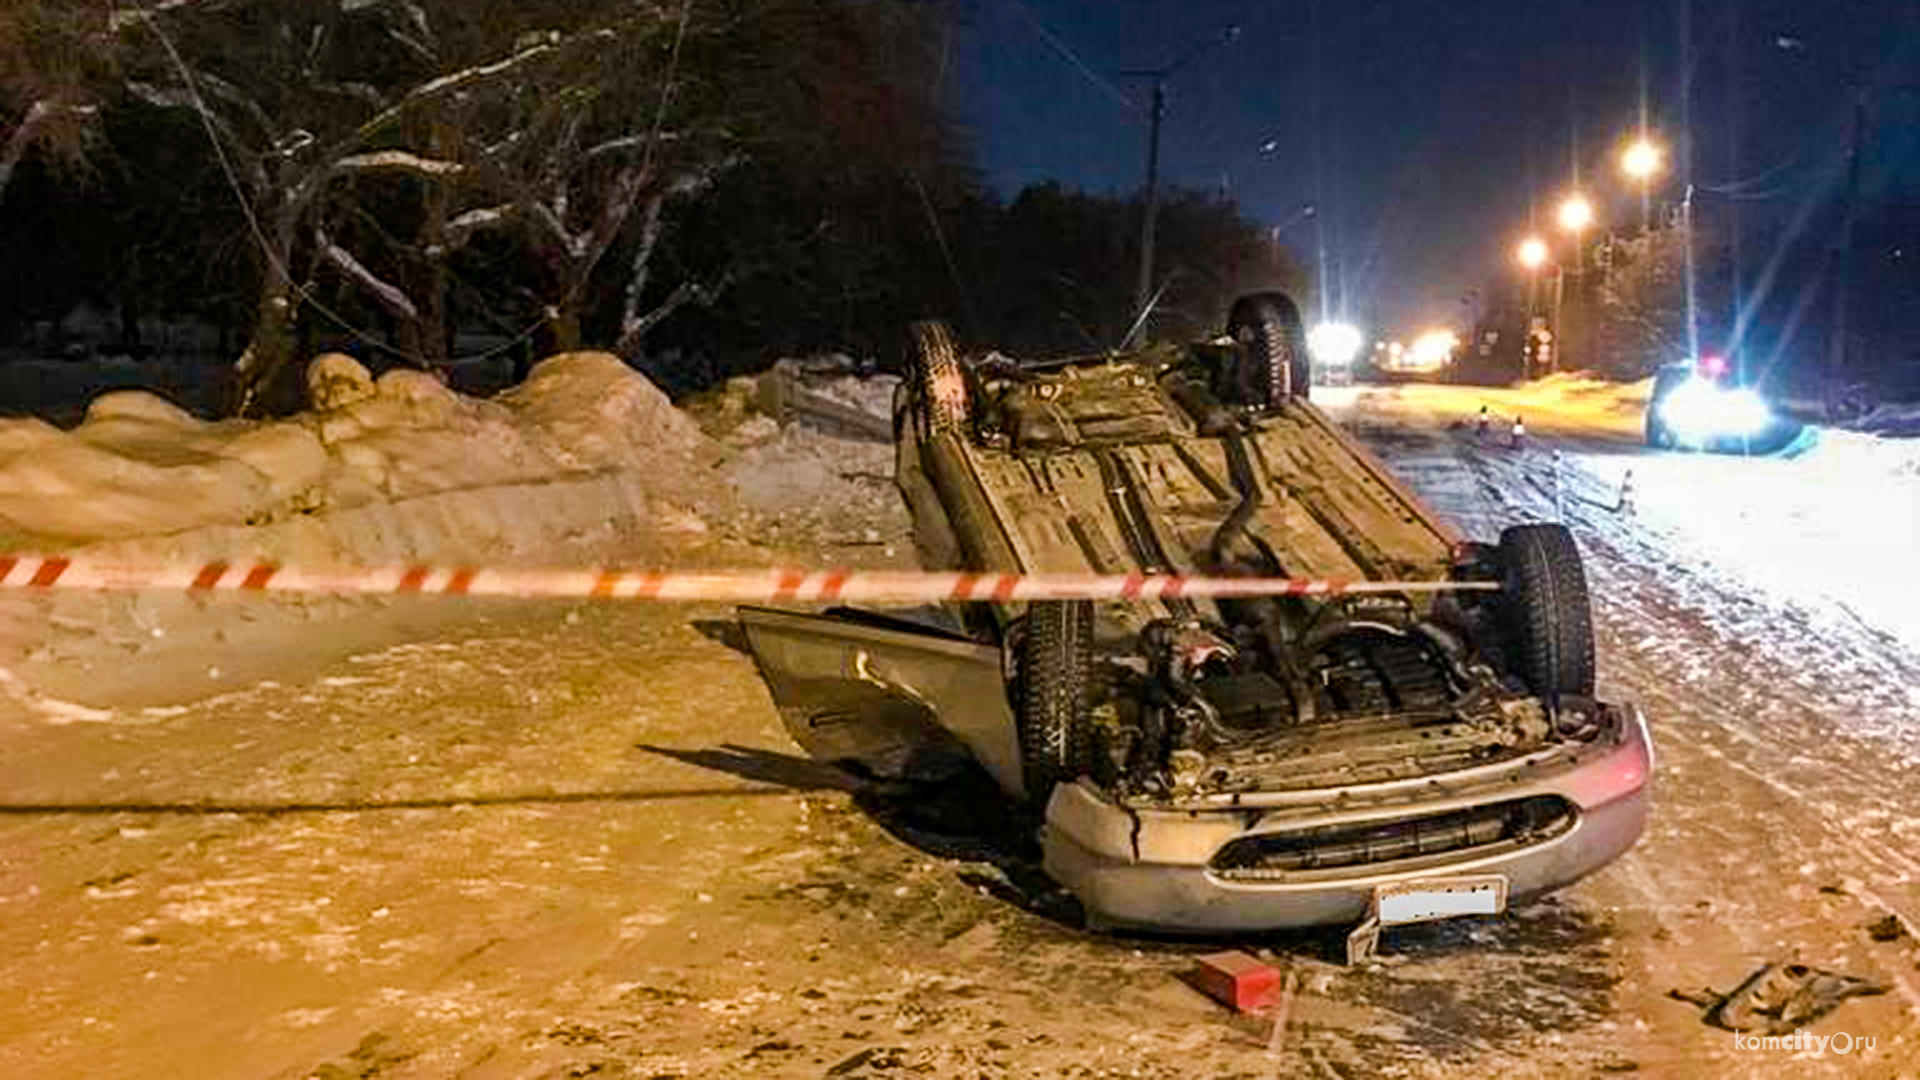 Подробности смертельного ДТП на Дзержинского — погибший водитель получил права 2 месяца назад